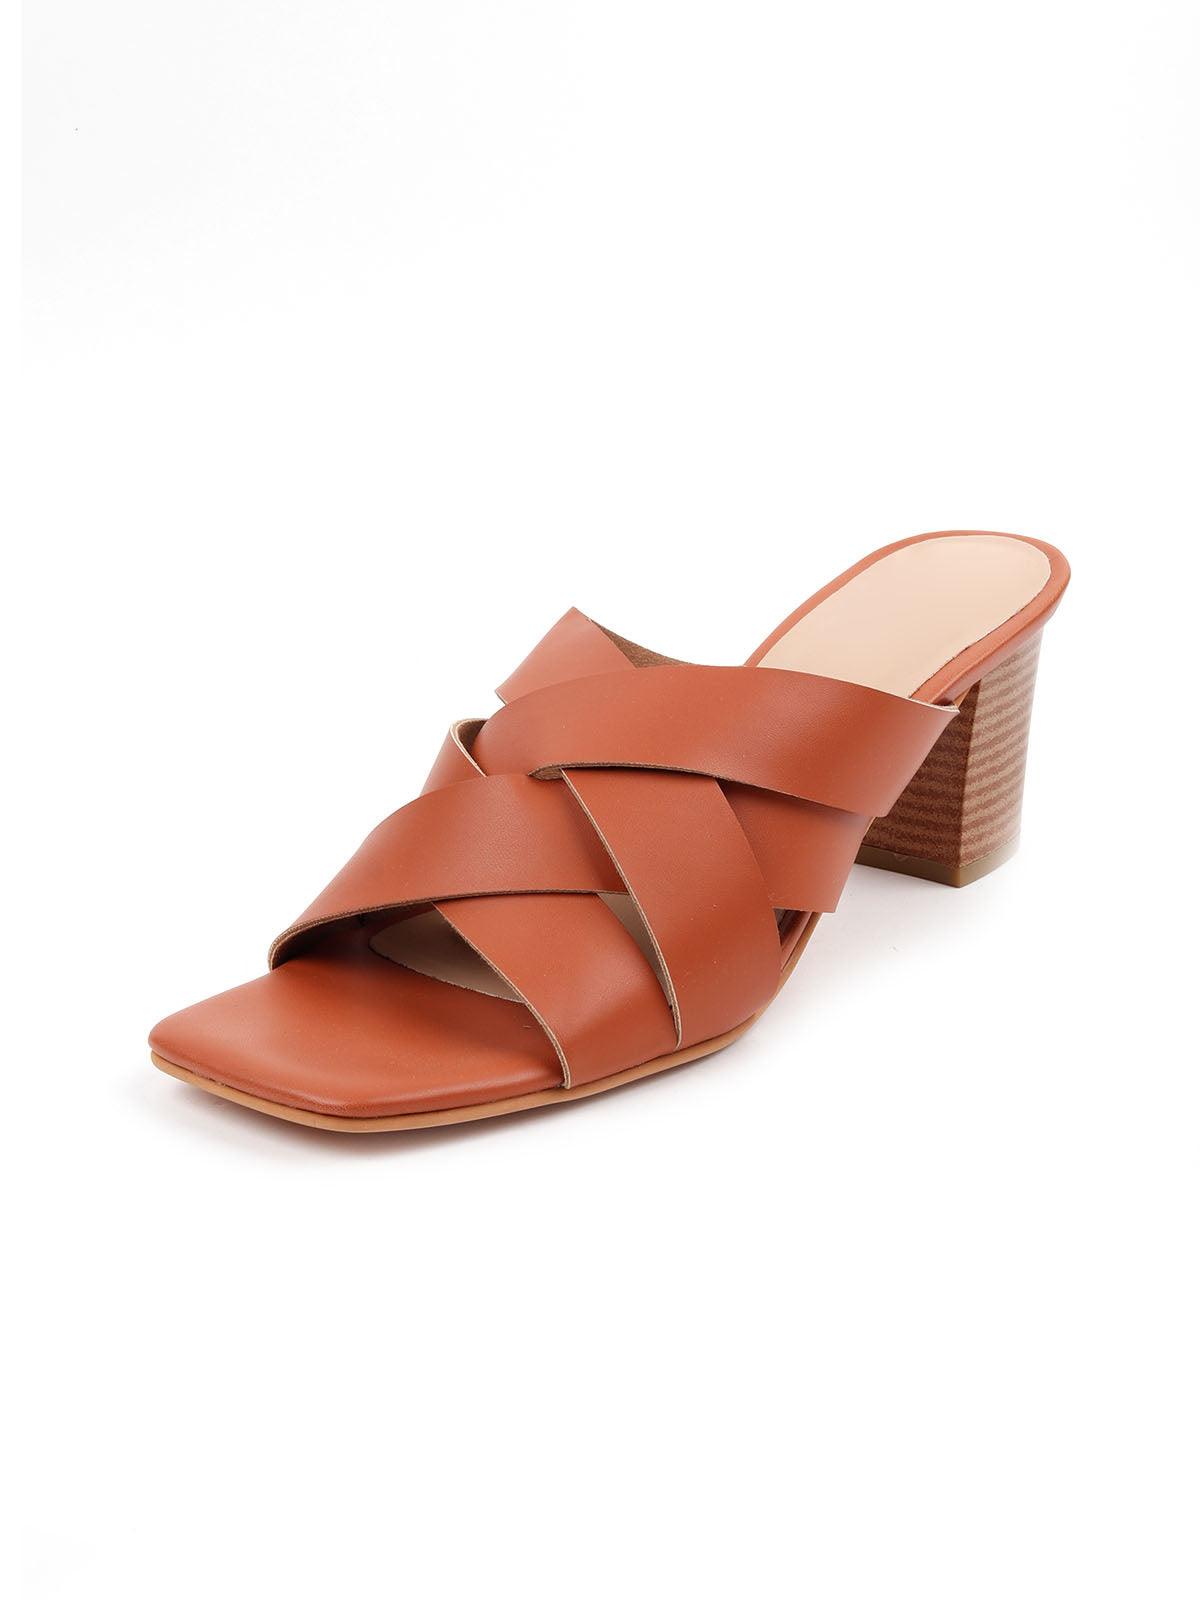 Brown Crisscross Heeled Footwear - Odette